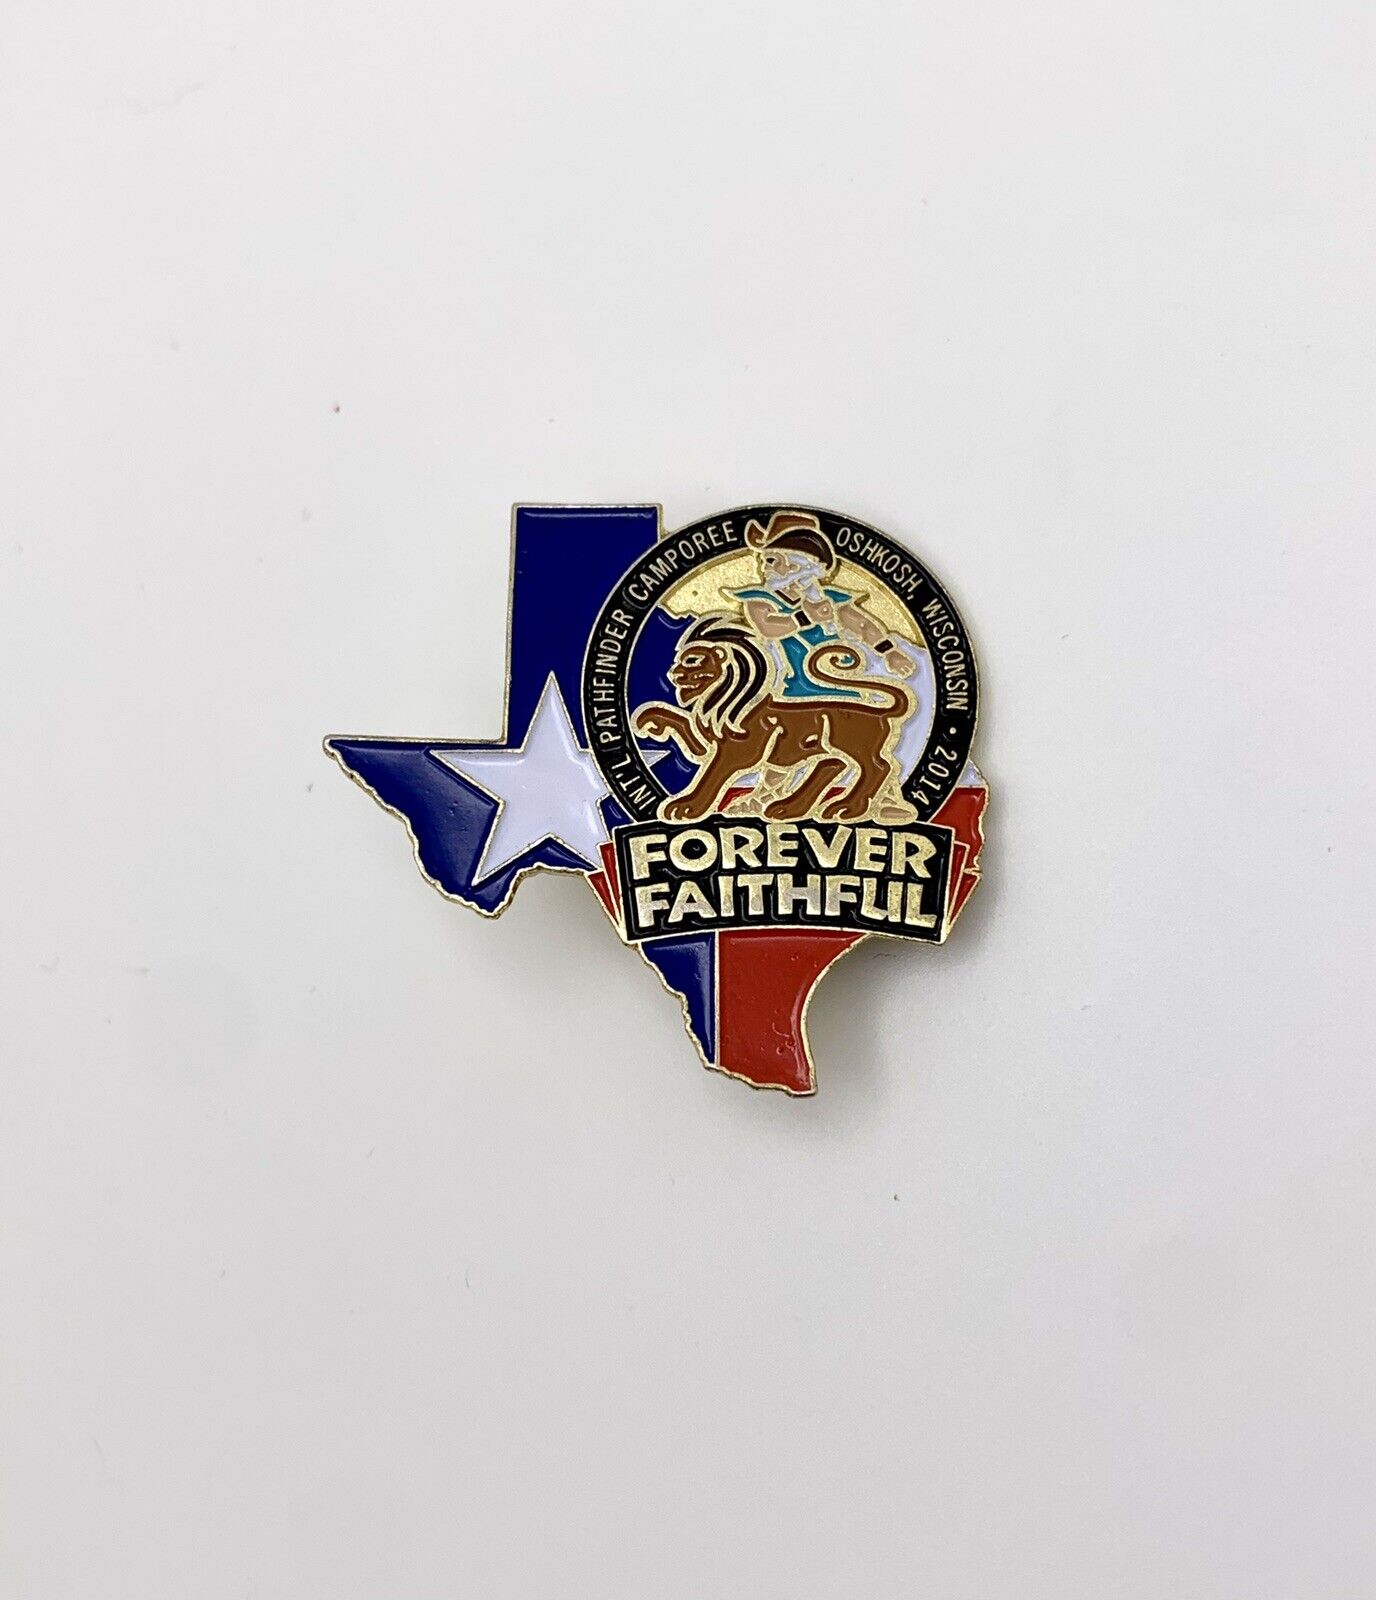 Forever Faithful Pathfinder Camporee Pin Texas Theme 2014 Oshkosh WI